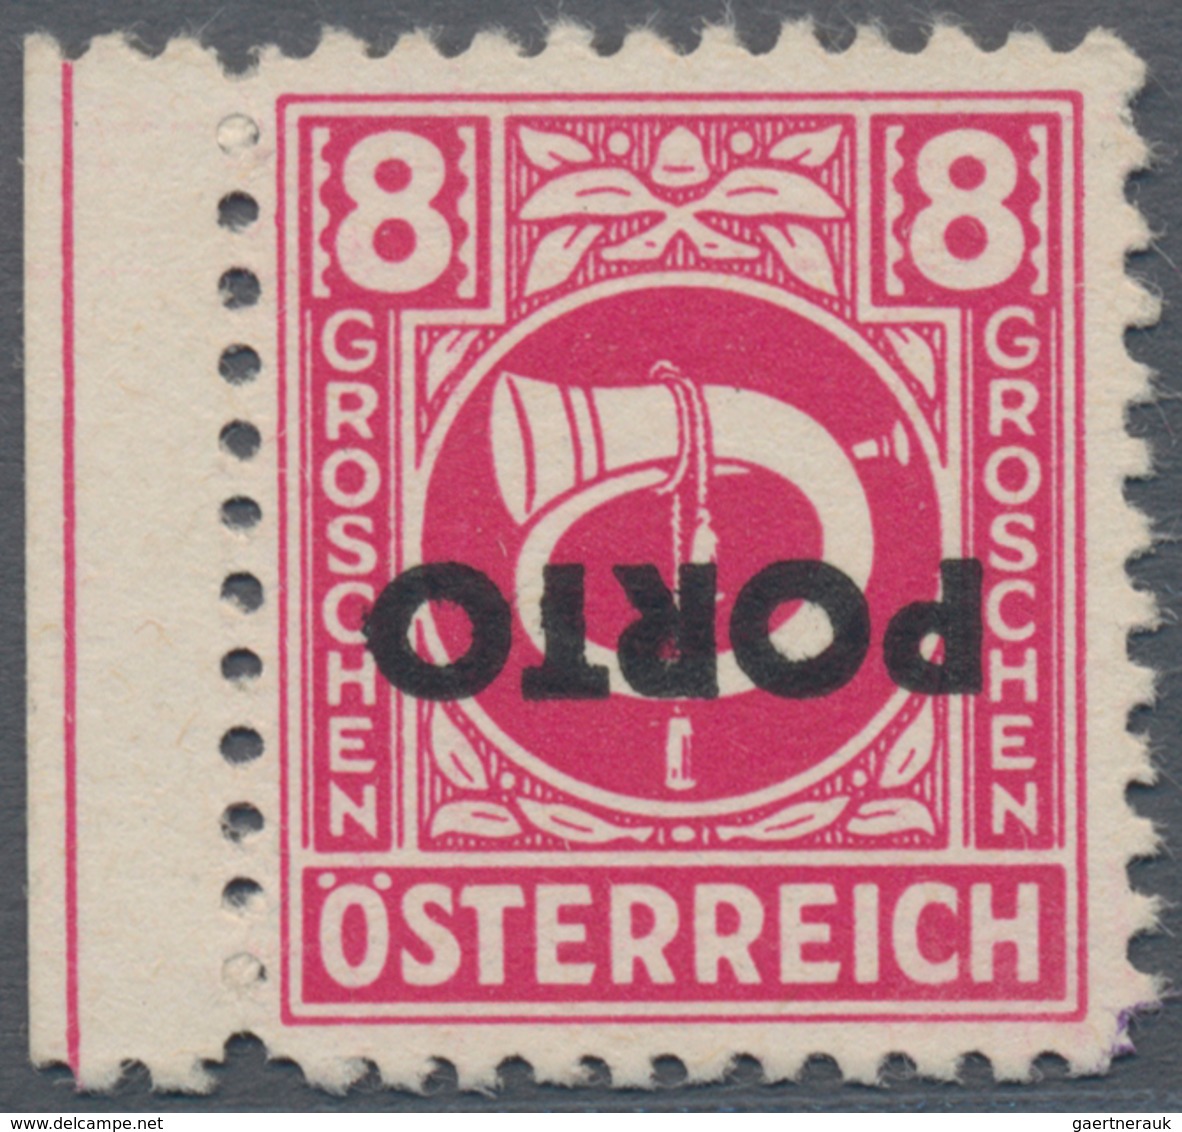 Österreich - Portomarken: 1946, Posthorn 3 Gr., 8 Gr., 10 Gr., 12 Gr., 20 Gr., 60 Gr. Und 1 Sch., Si - Postage Due